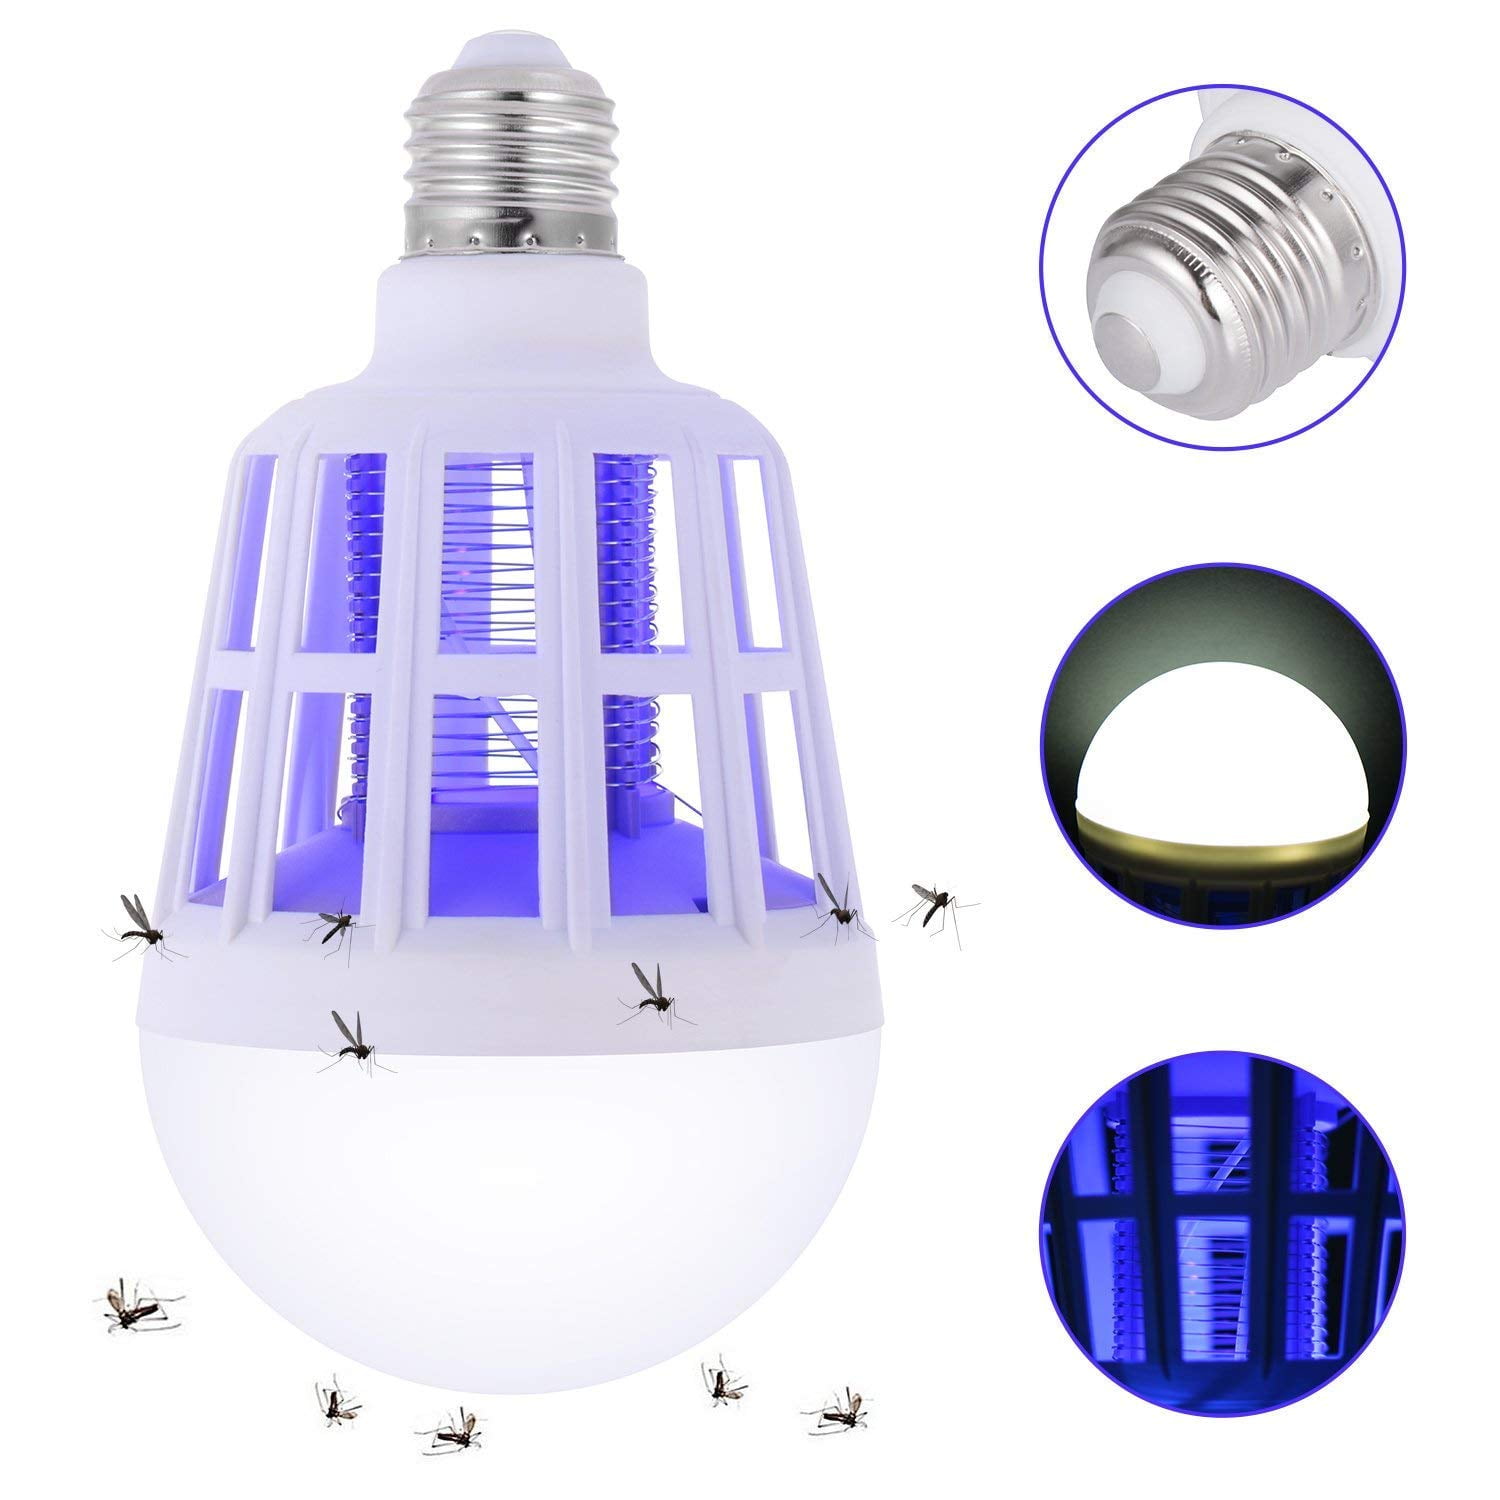 USB 5V Mosquito Killer Lamp 2 in 1 Bulb E27 LED Grow Light Killing Fly Repeller 